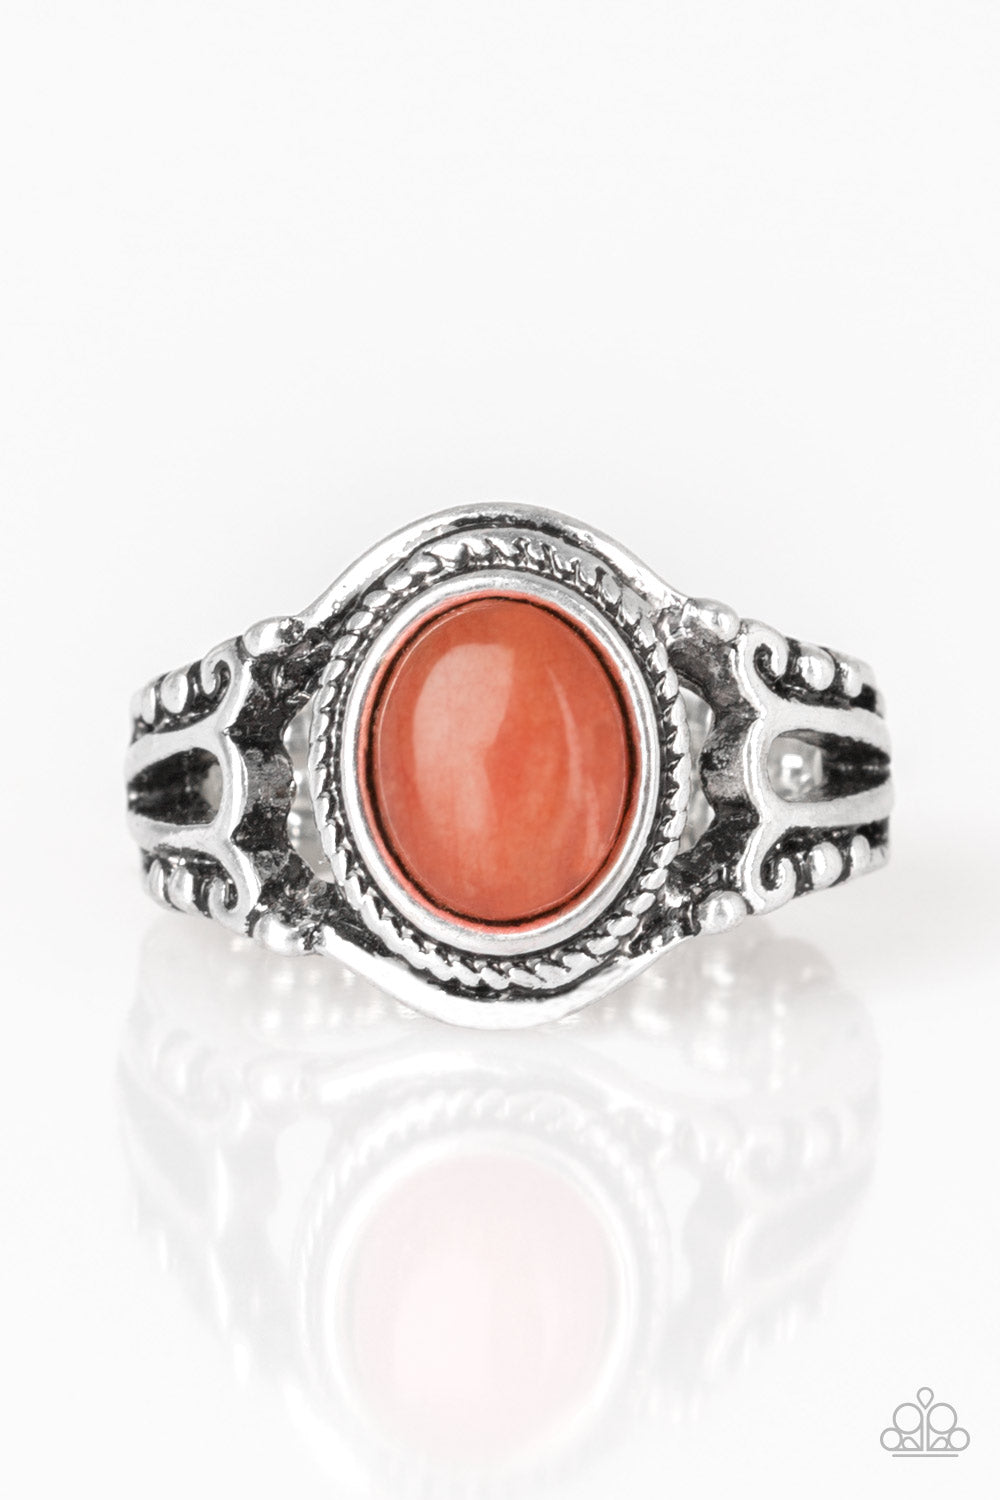 Paparazzi Peacefully Peaceful Orange Stone Ring